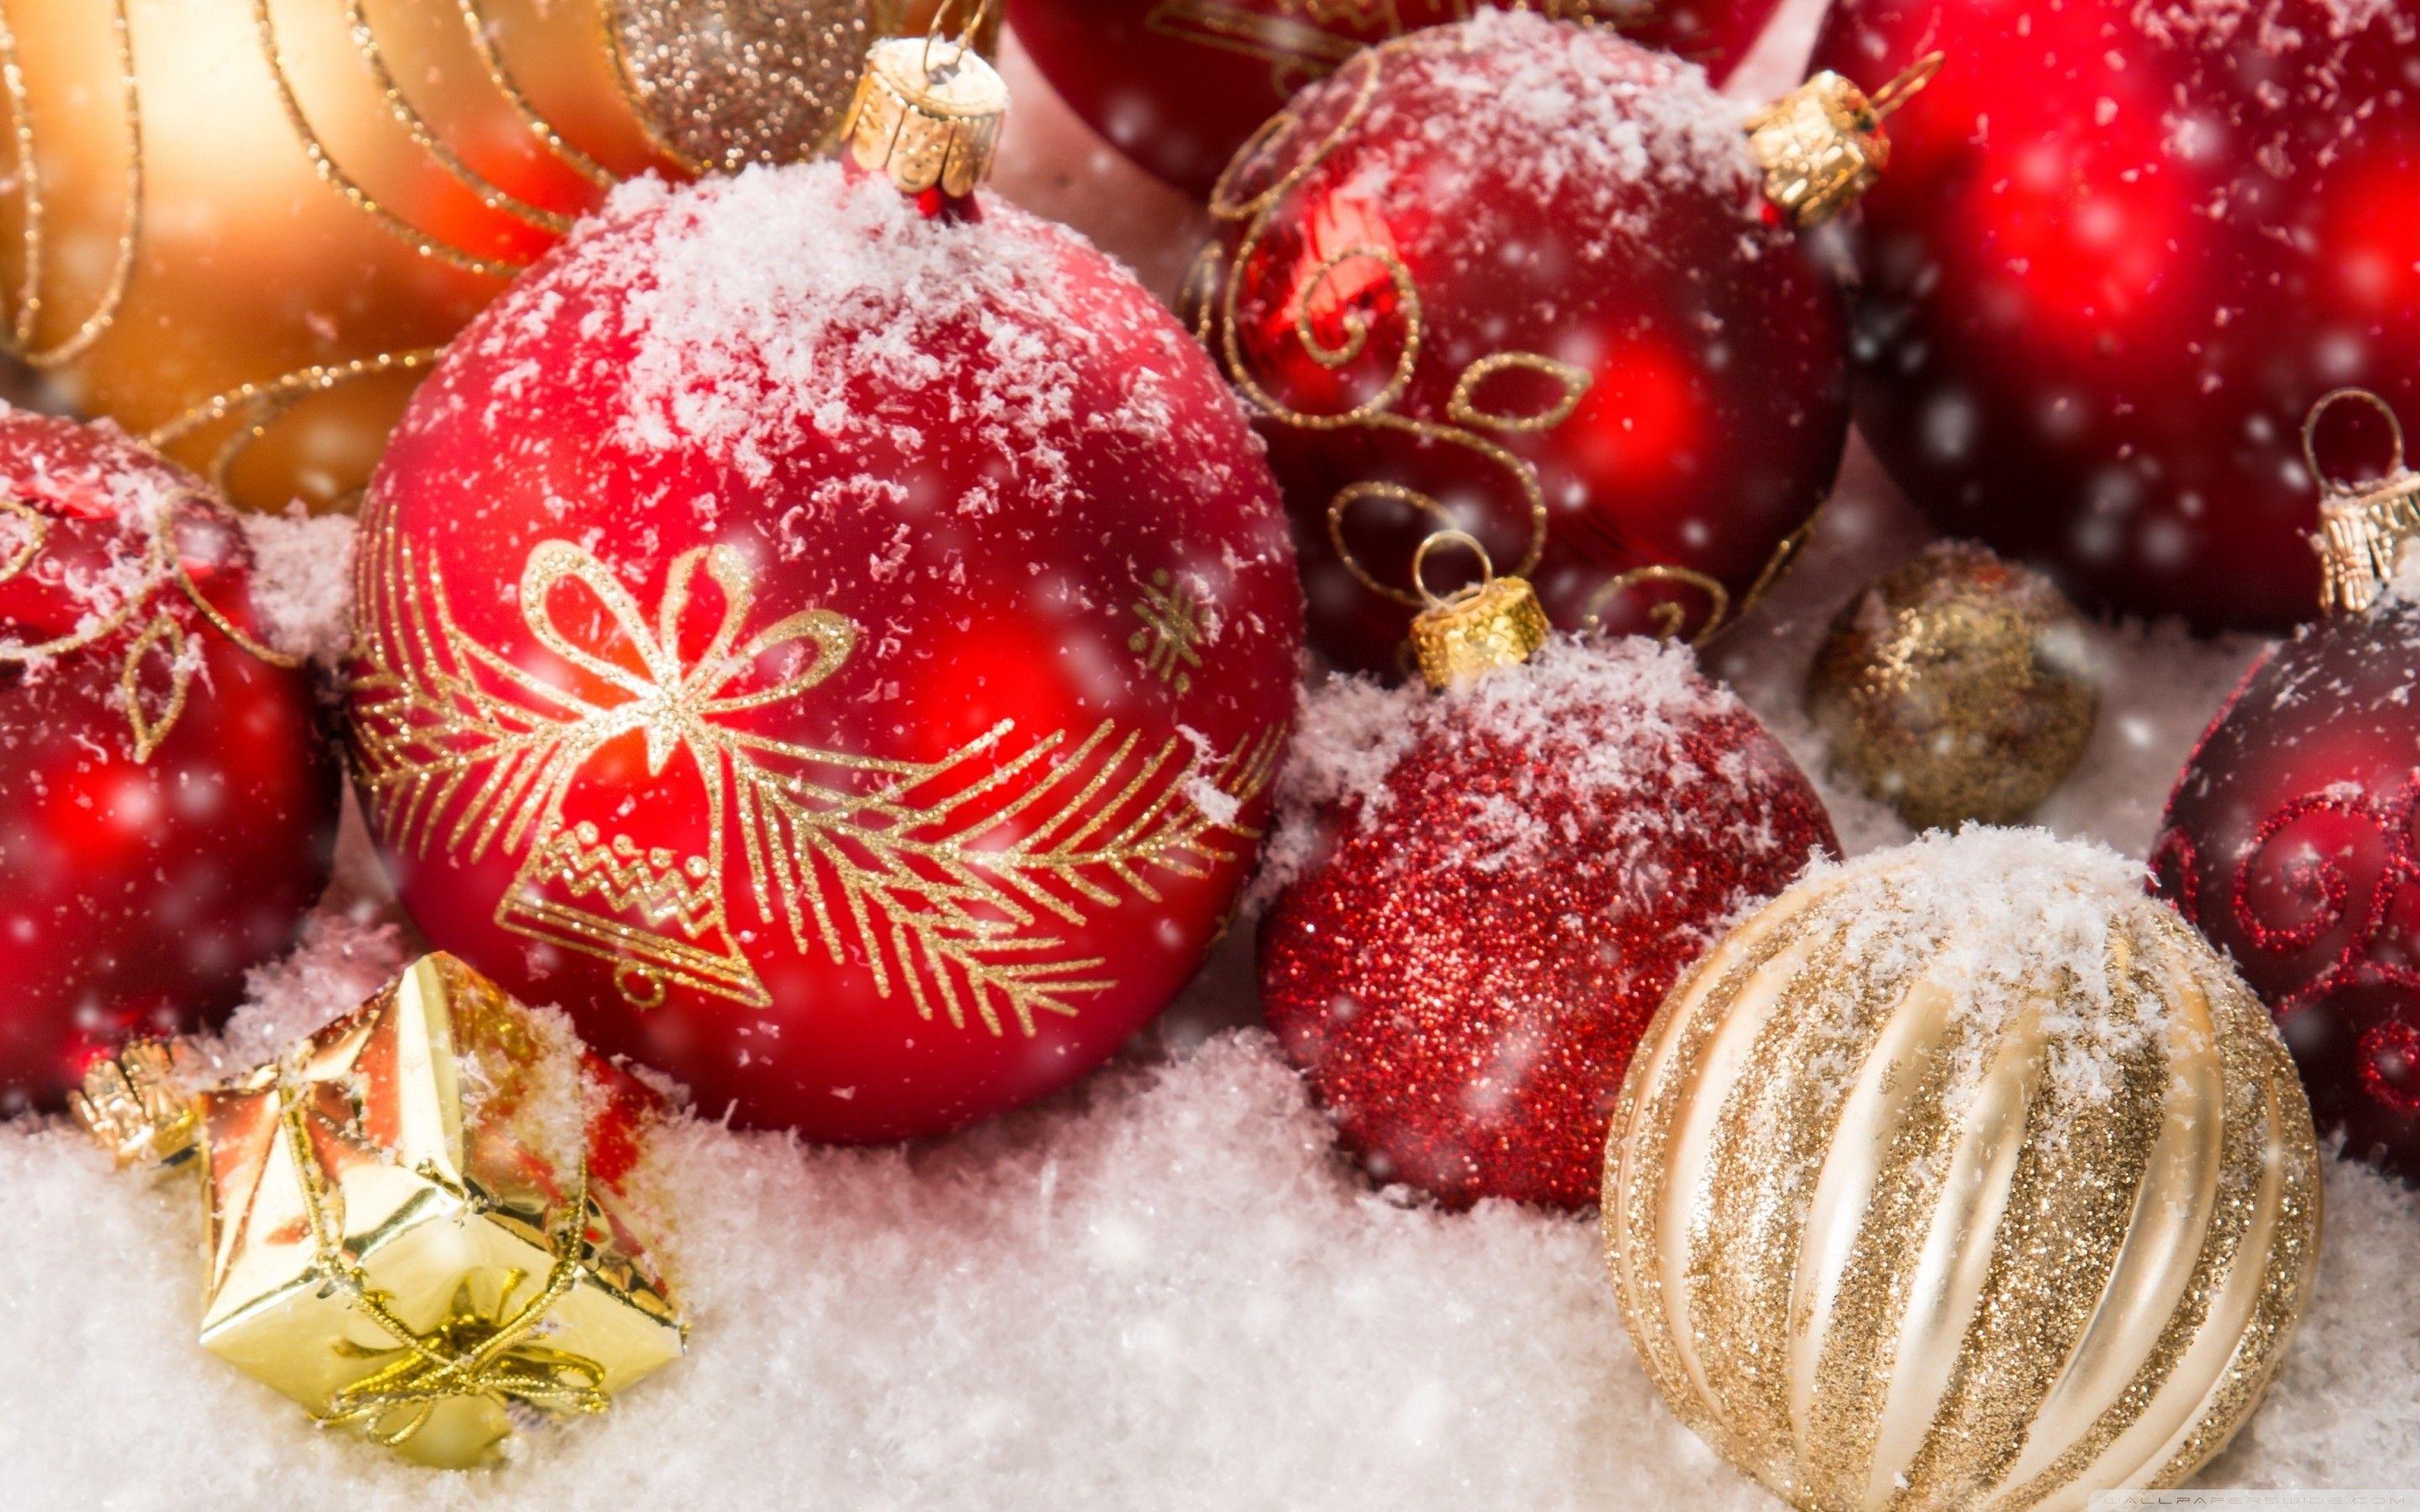 Những Merry Christmas Ornament Wallpapers lung linh sẽ đem đến cho bạn và người thân nhiều cảm xúc xúc động.